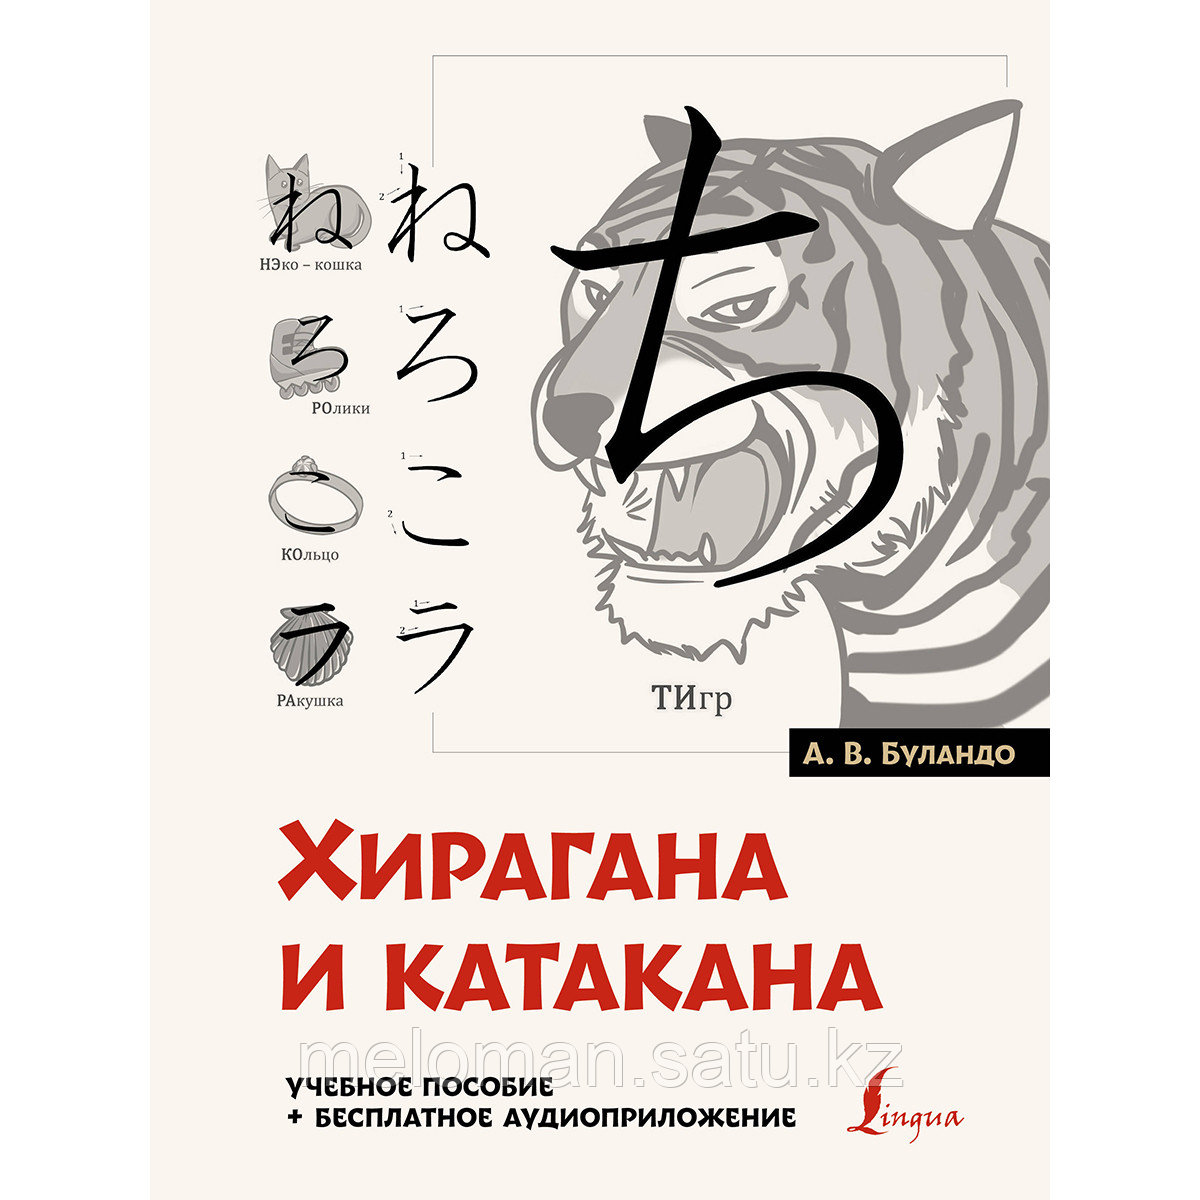 Буландо А. В.: Хирагана и катакана: учебное пособие + бесплатное аудиоприложение